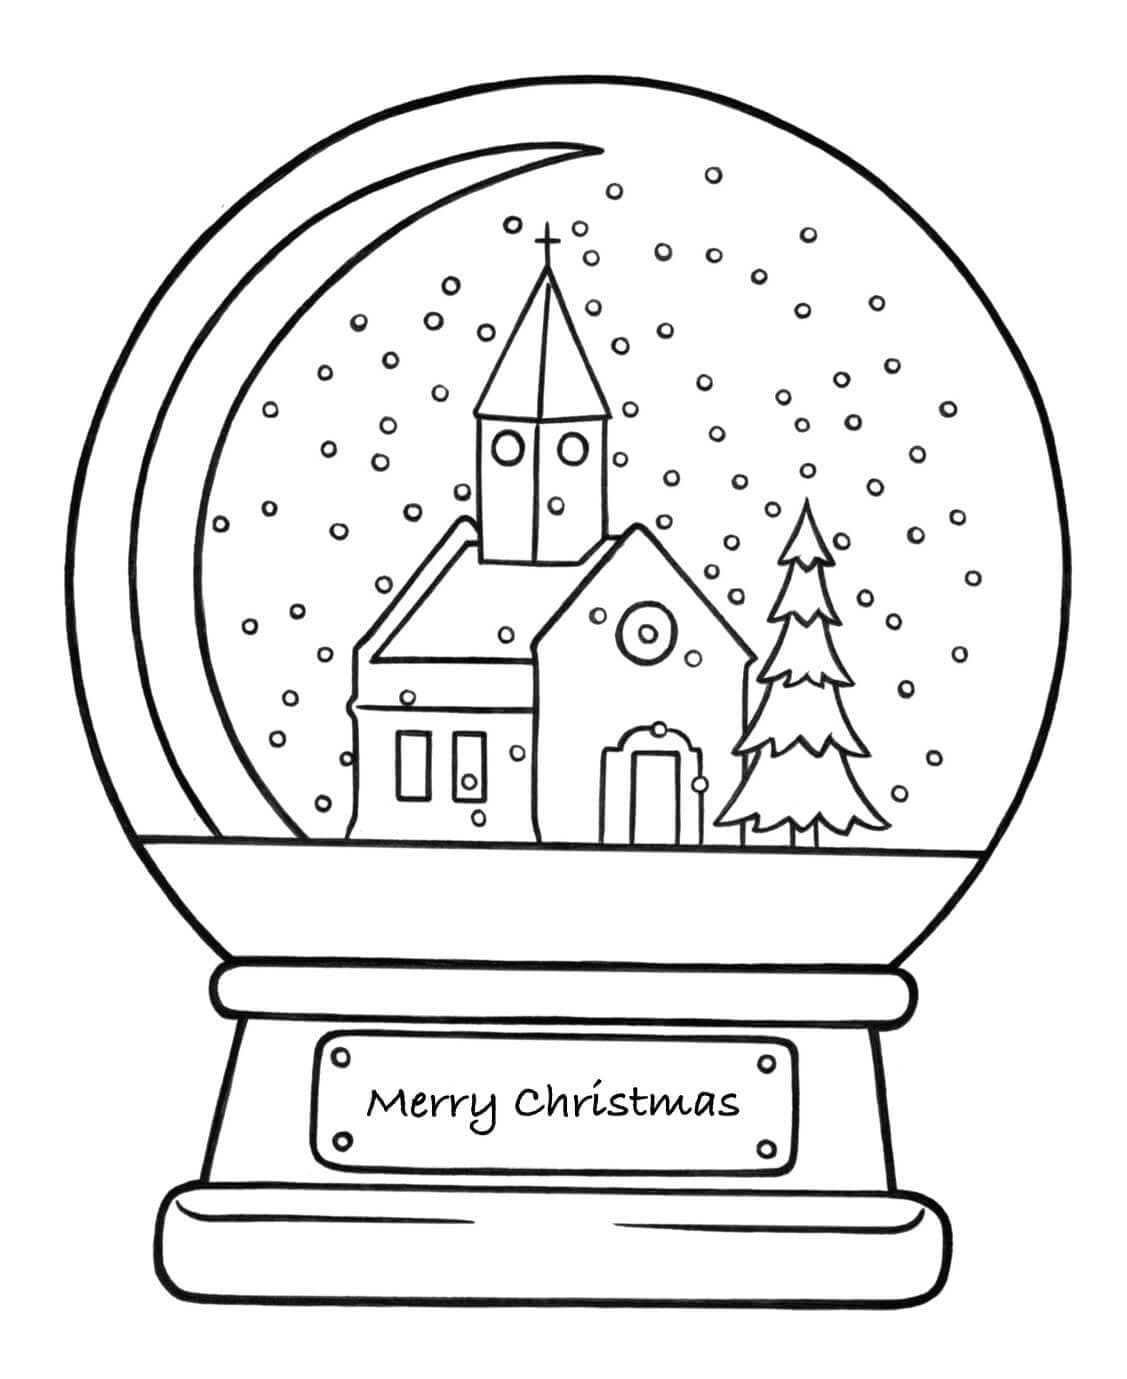 Boule à Neige pour Noël coloring page